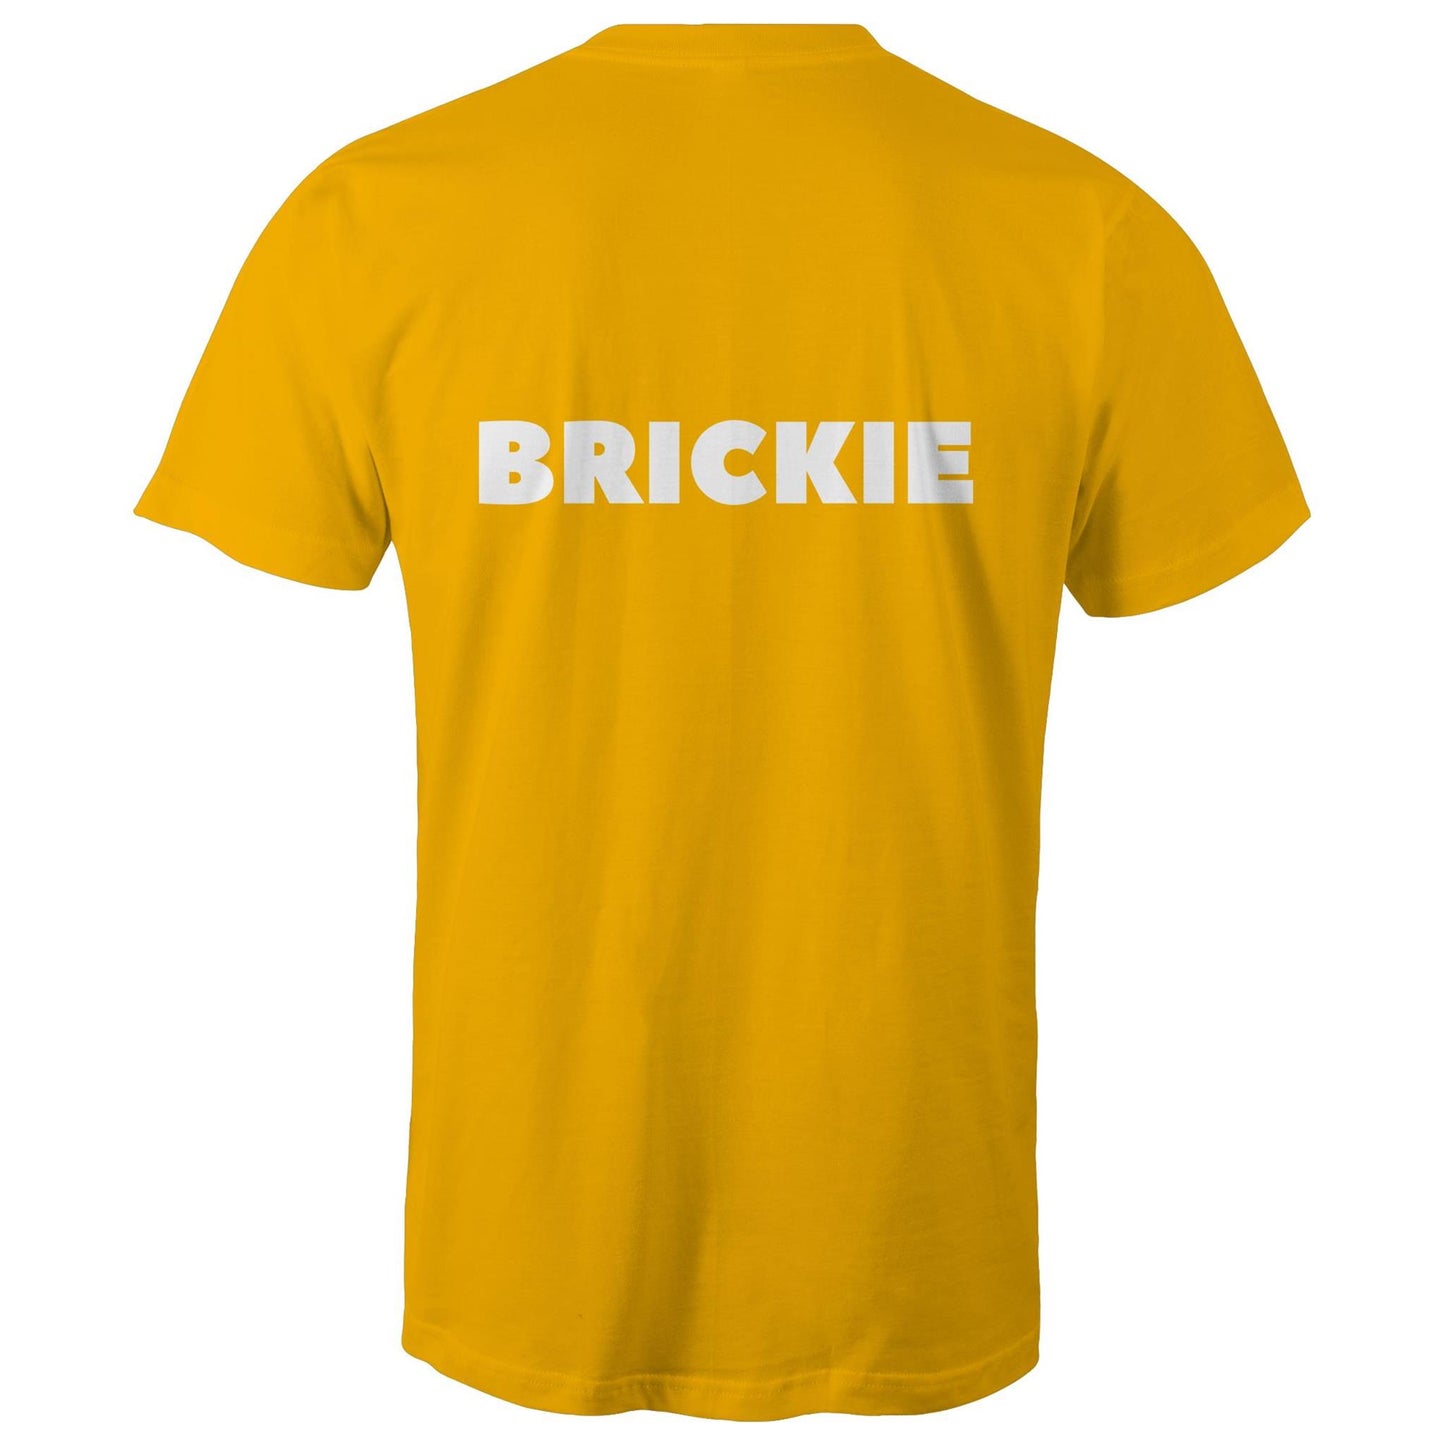 BRICKIE - Mens T-Shirt